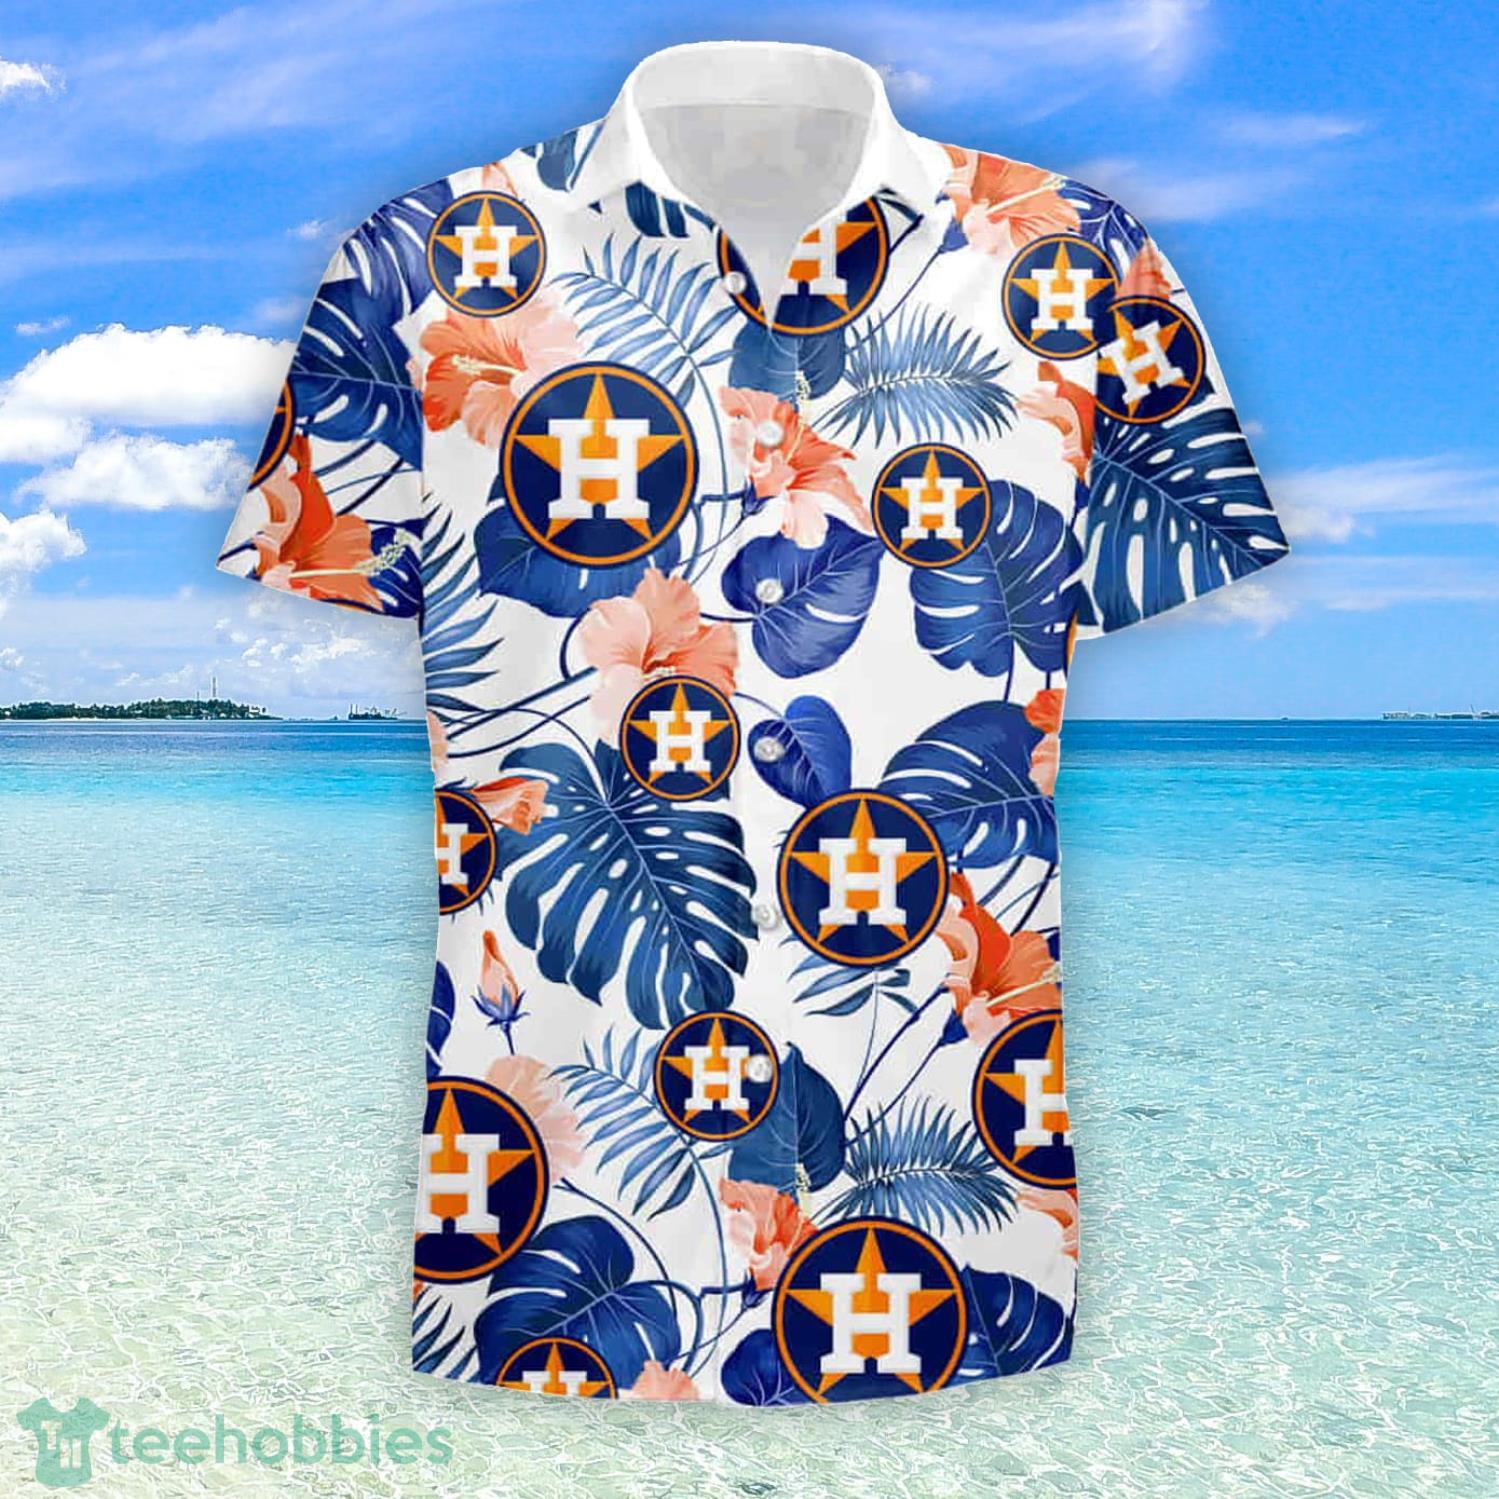 Houston Astros Hawaii Summer Hawaiian Shirt And Short